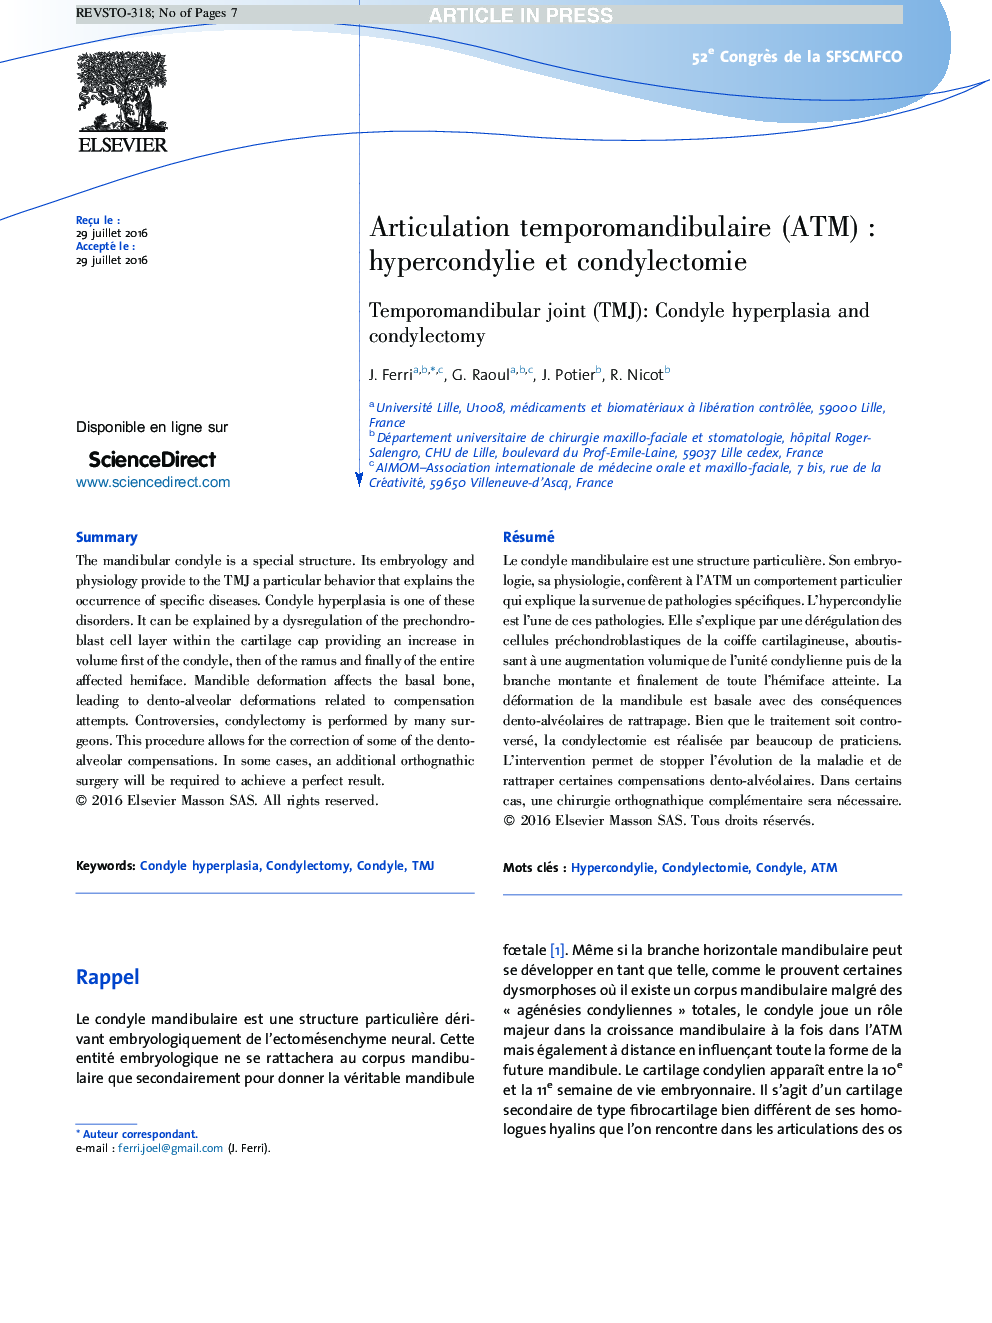 Articulation temporomandibulaire (ATM)Â : hypercondylie et condylectomie